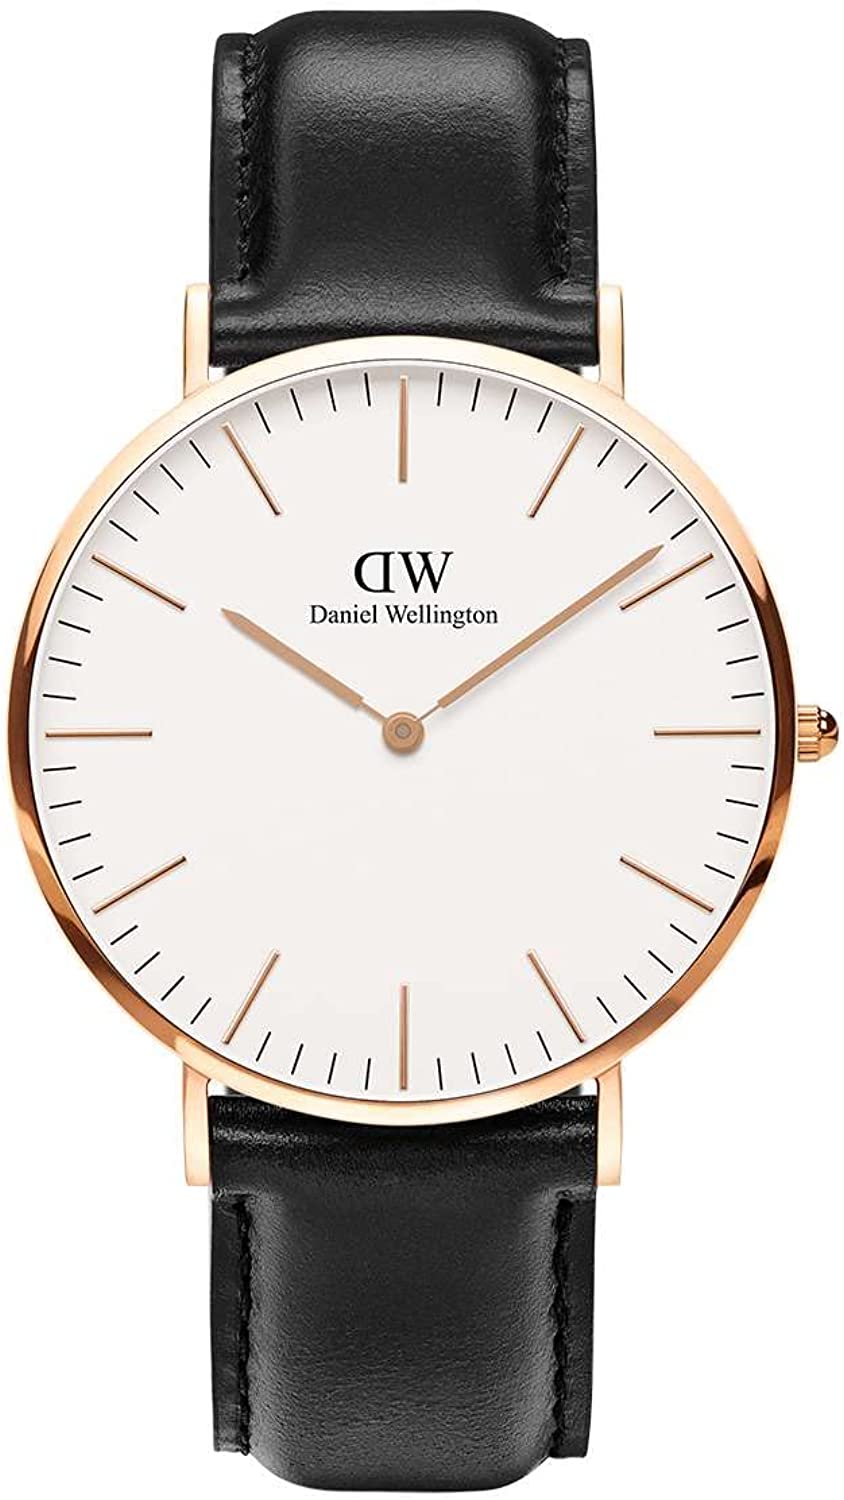 ダニエルウェリントン DW 腕時計 メンズ Classic Sheffield 40mm DW00100007 並行輸入品903842